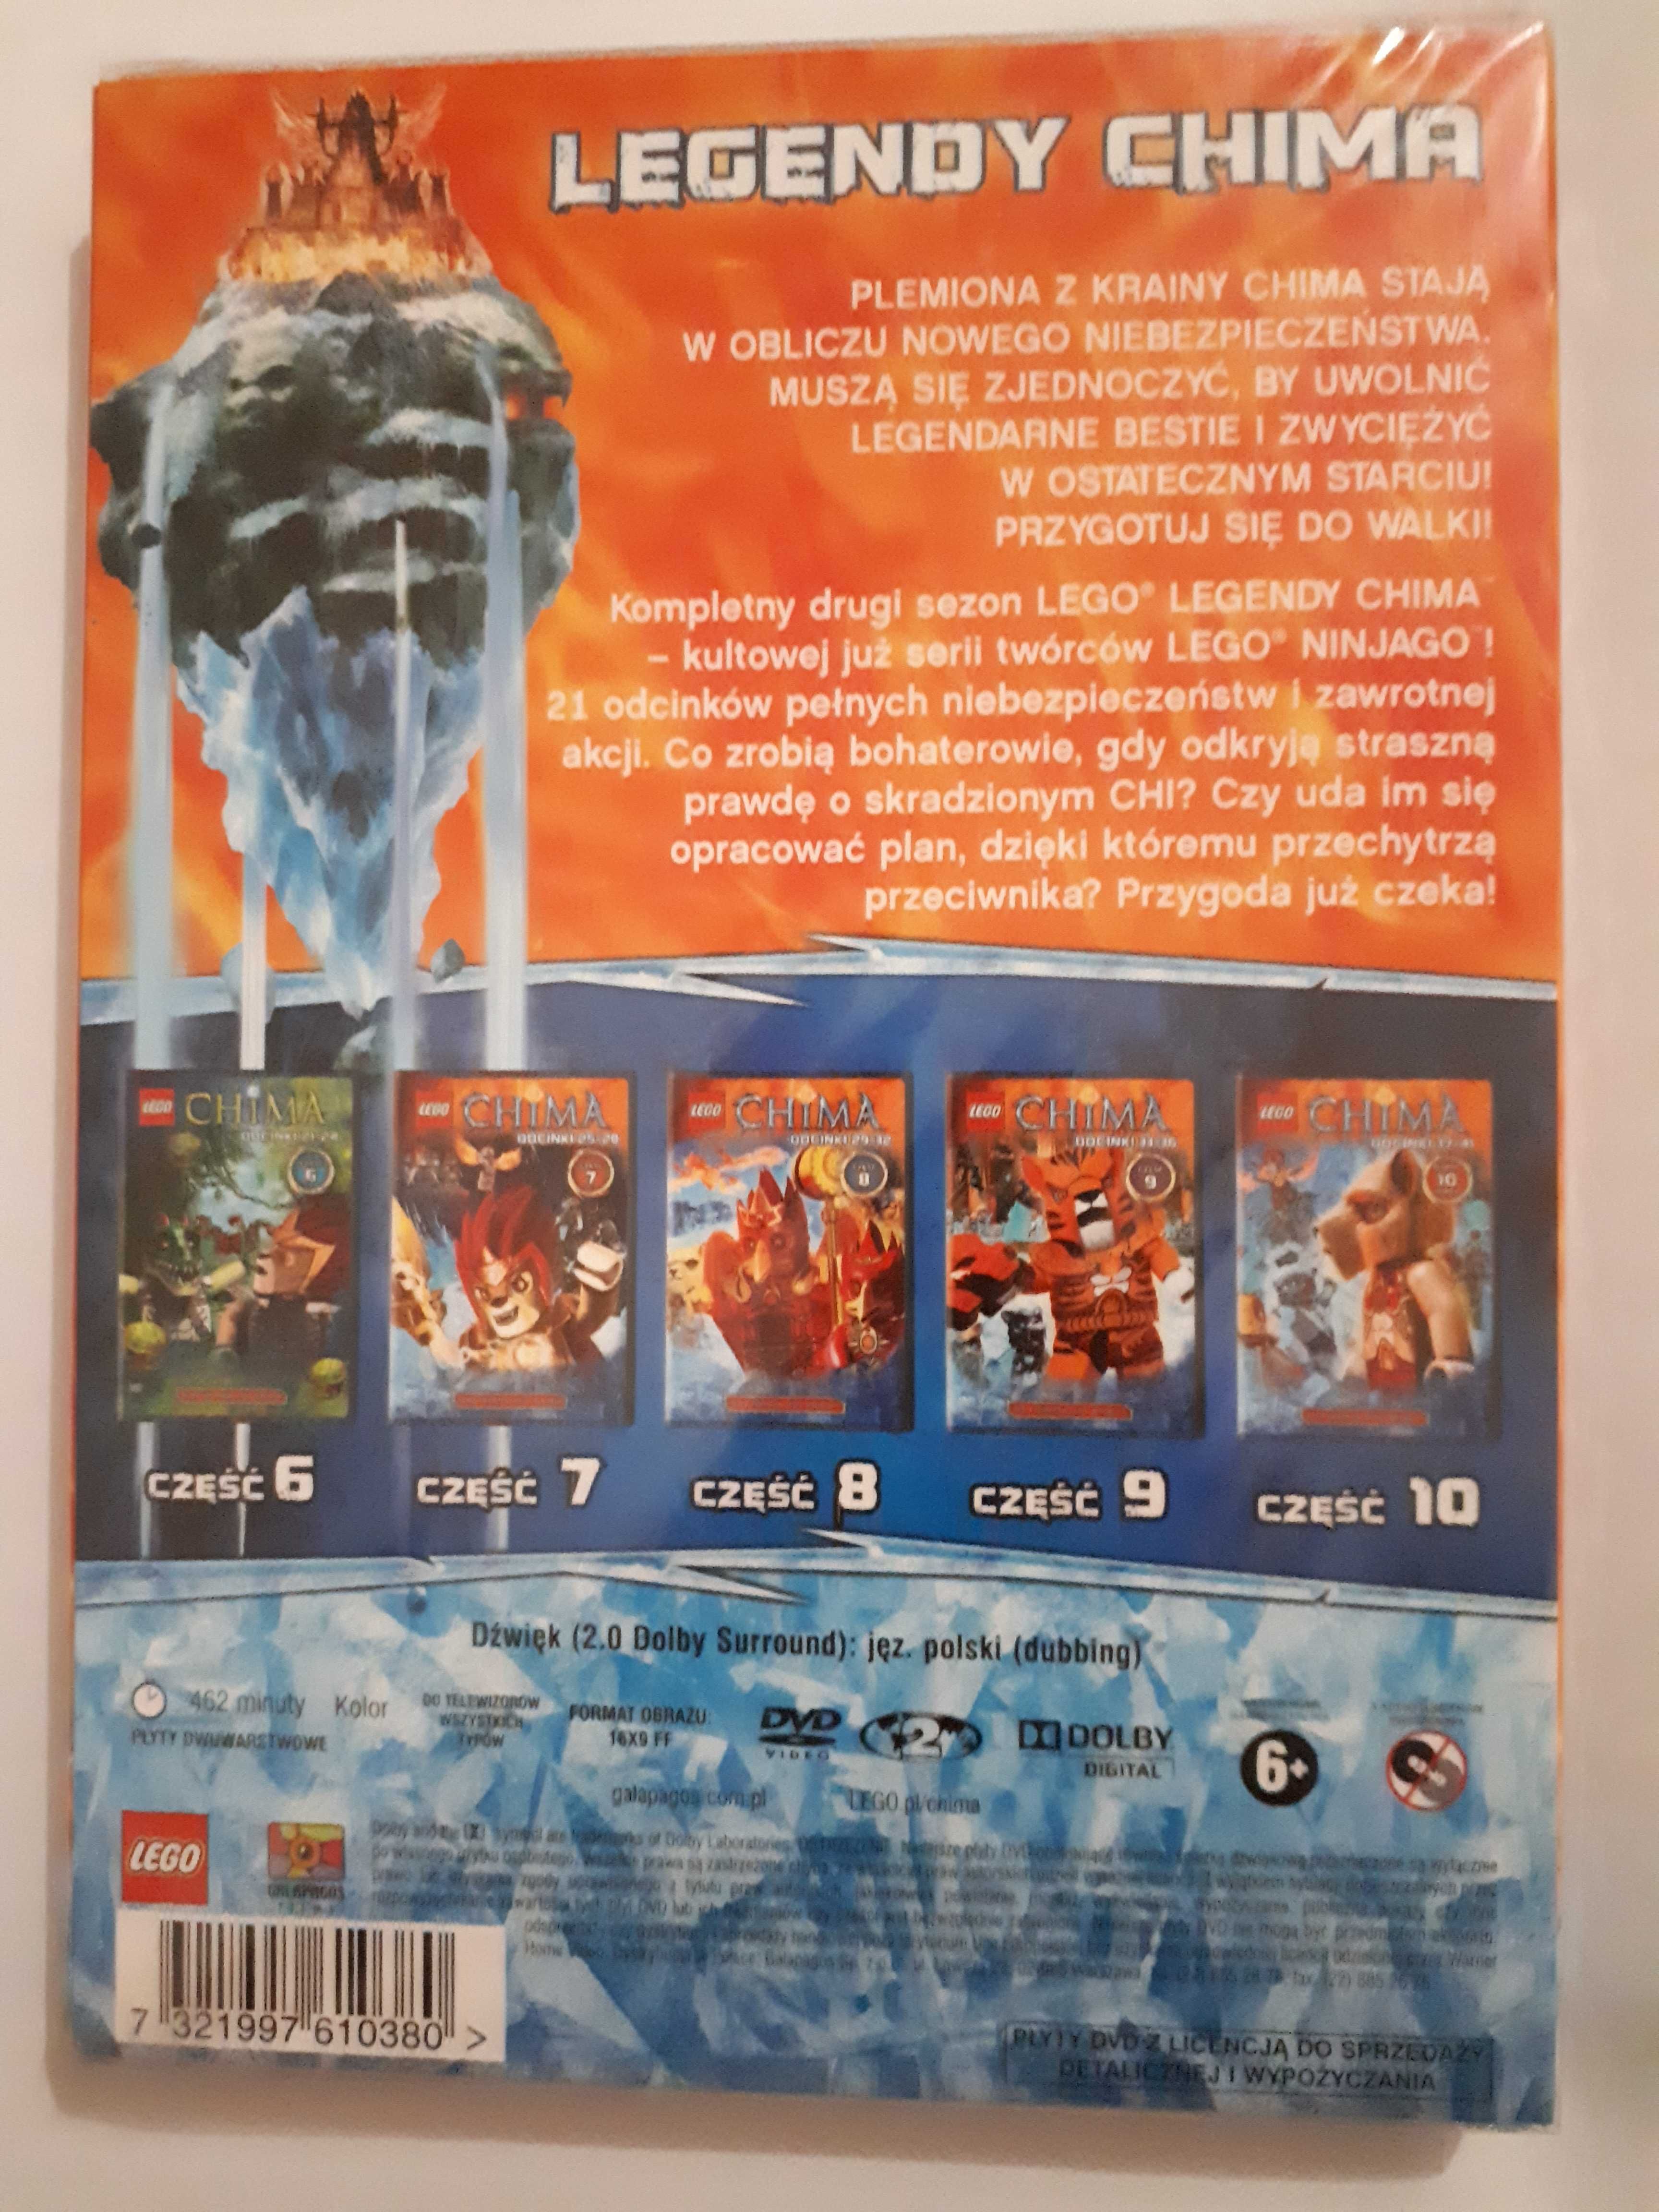 LEGO Chima 5 DVD Sezon 2 Odcinki 21-40